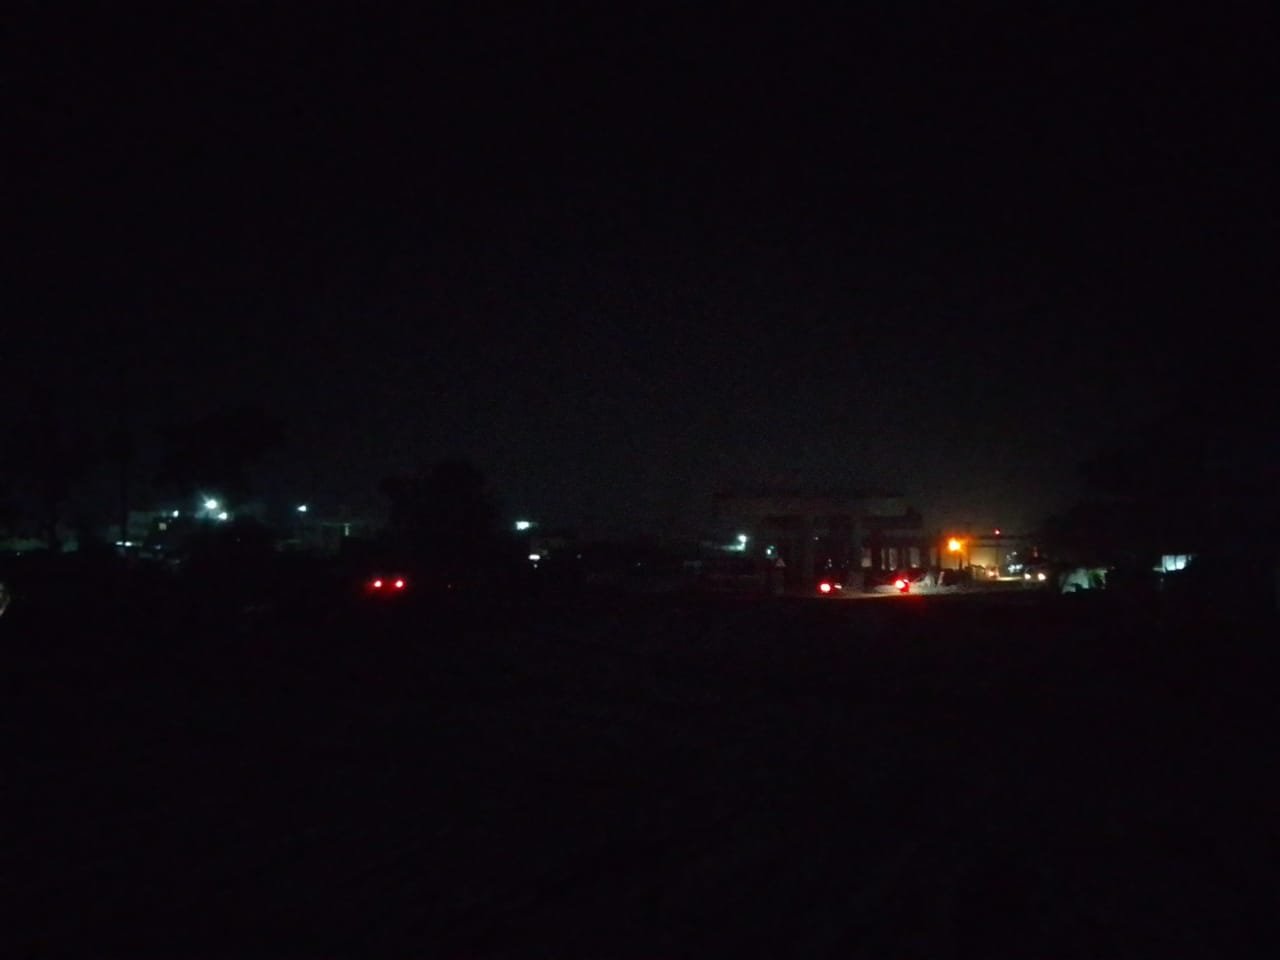 अँधेरे में ही गुजरता है राघोपुर ब्लॉक से लेकर रेलवे स्टेशन तक का रात्रि समय, अप्रिय घटना की है संभावना।